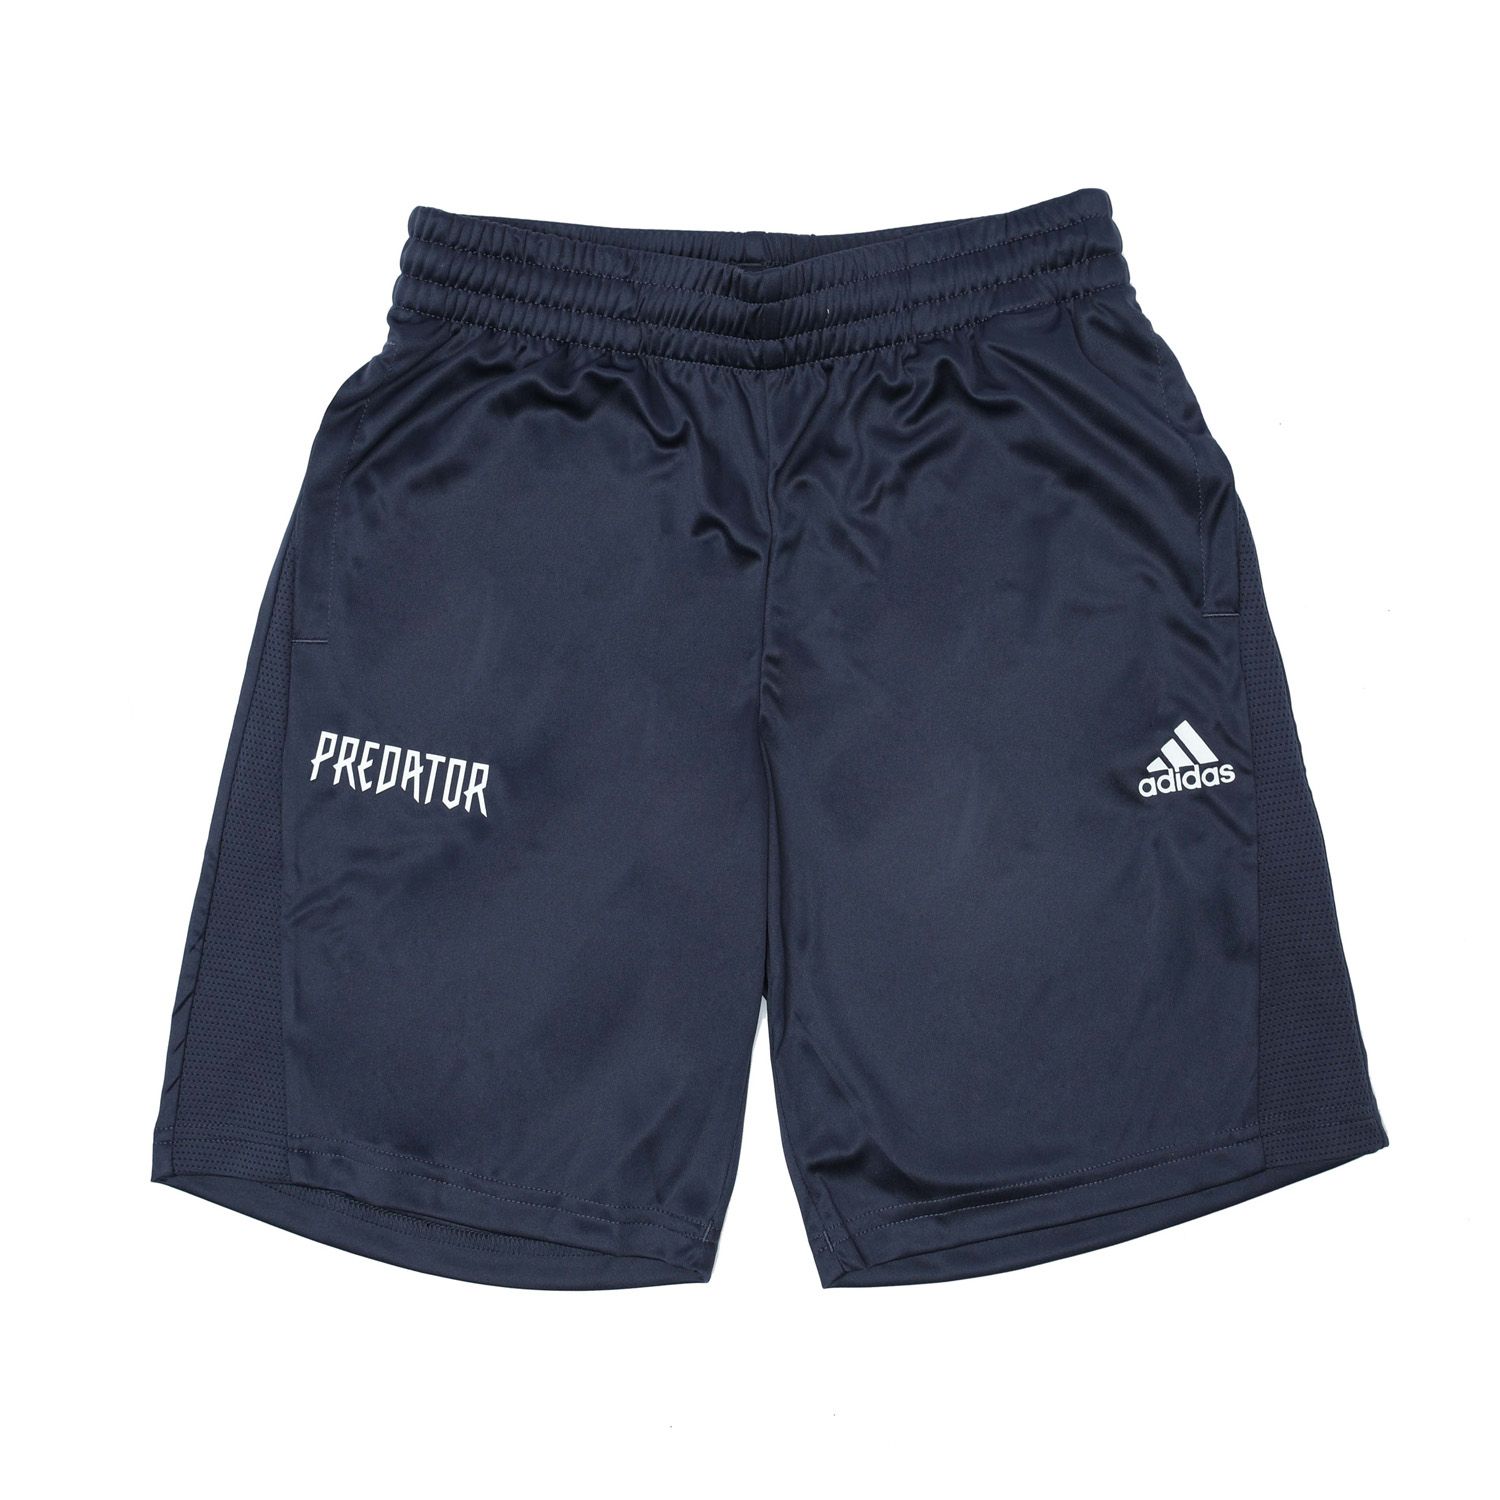 Boys Predator Shorts